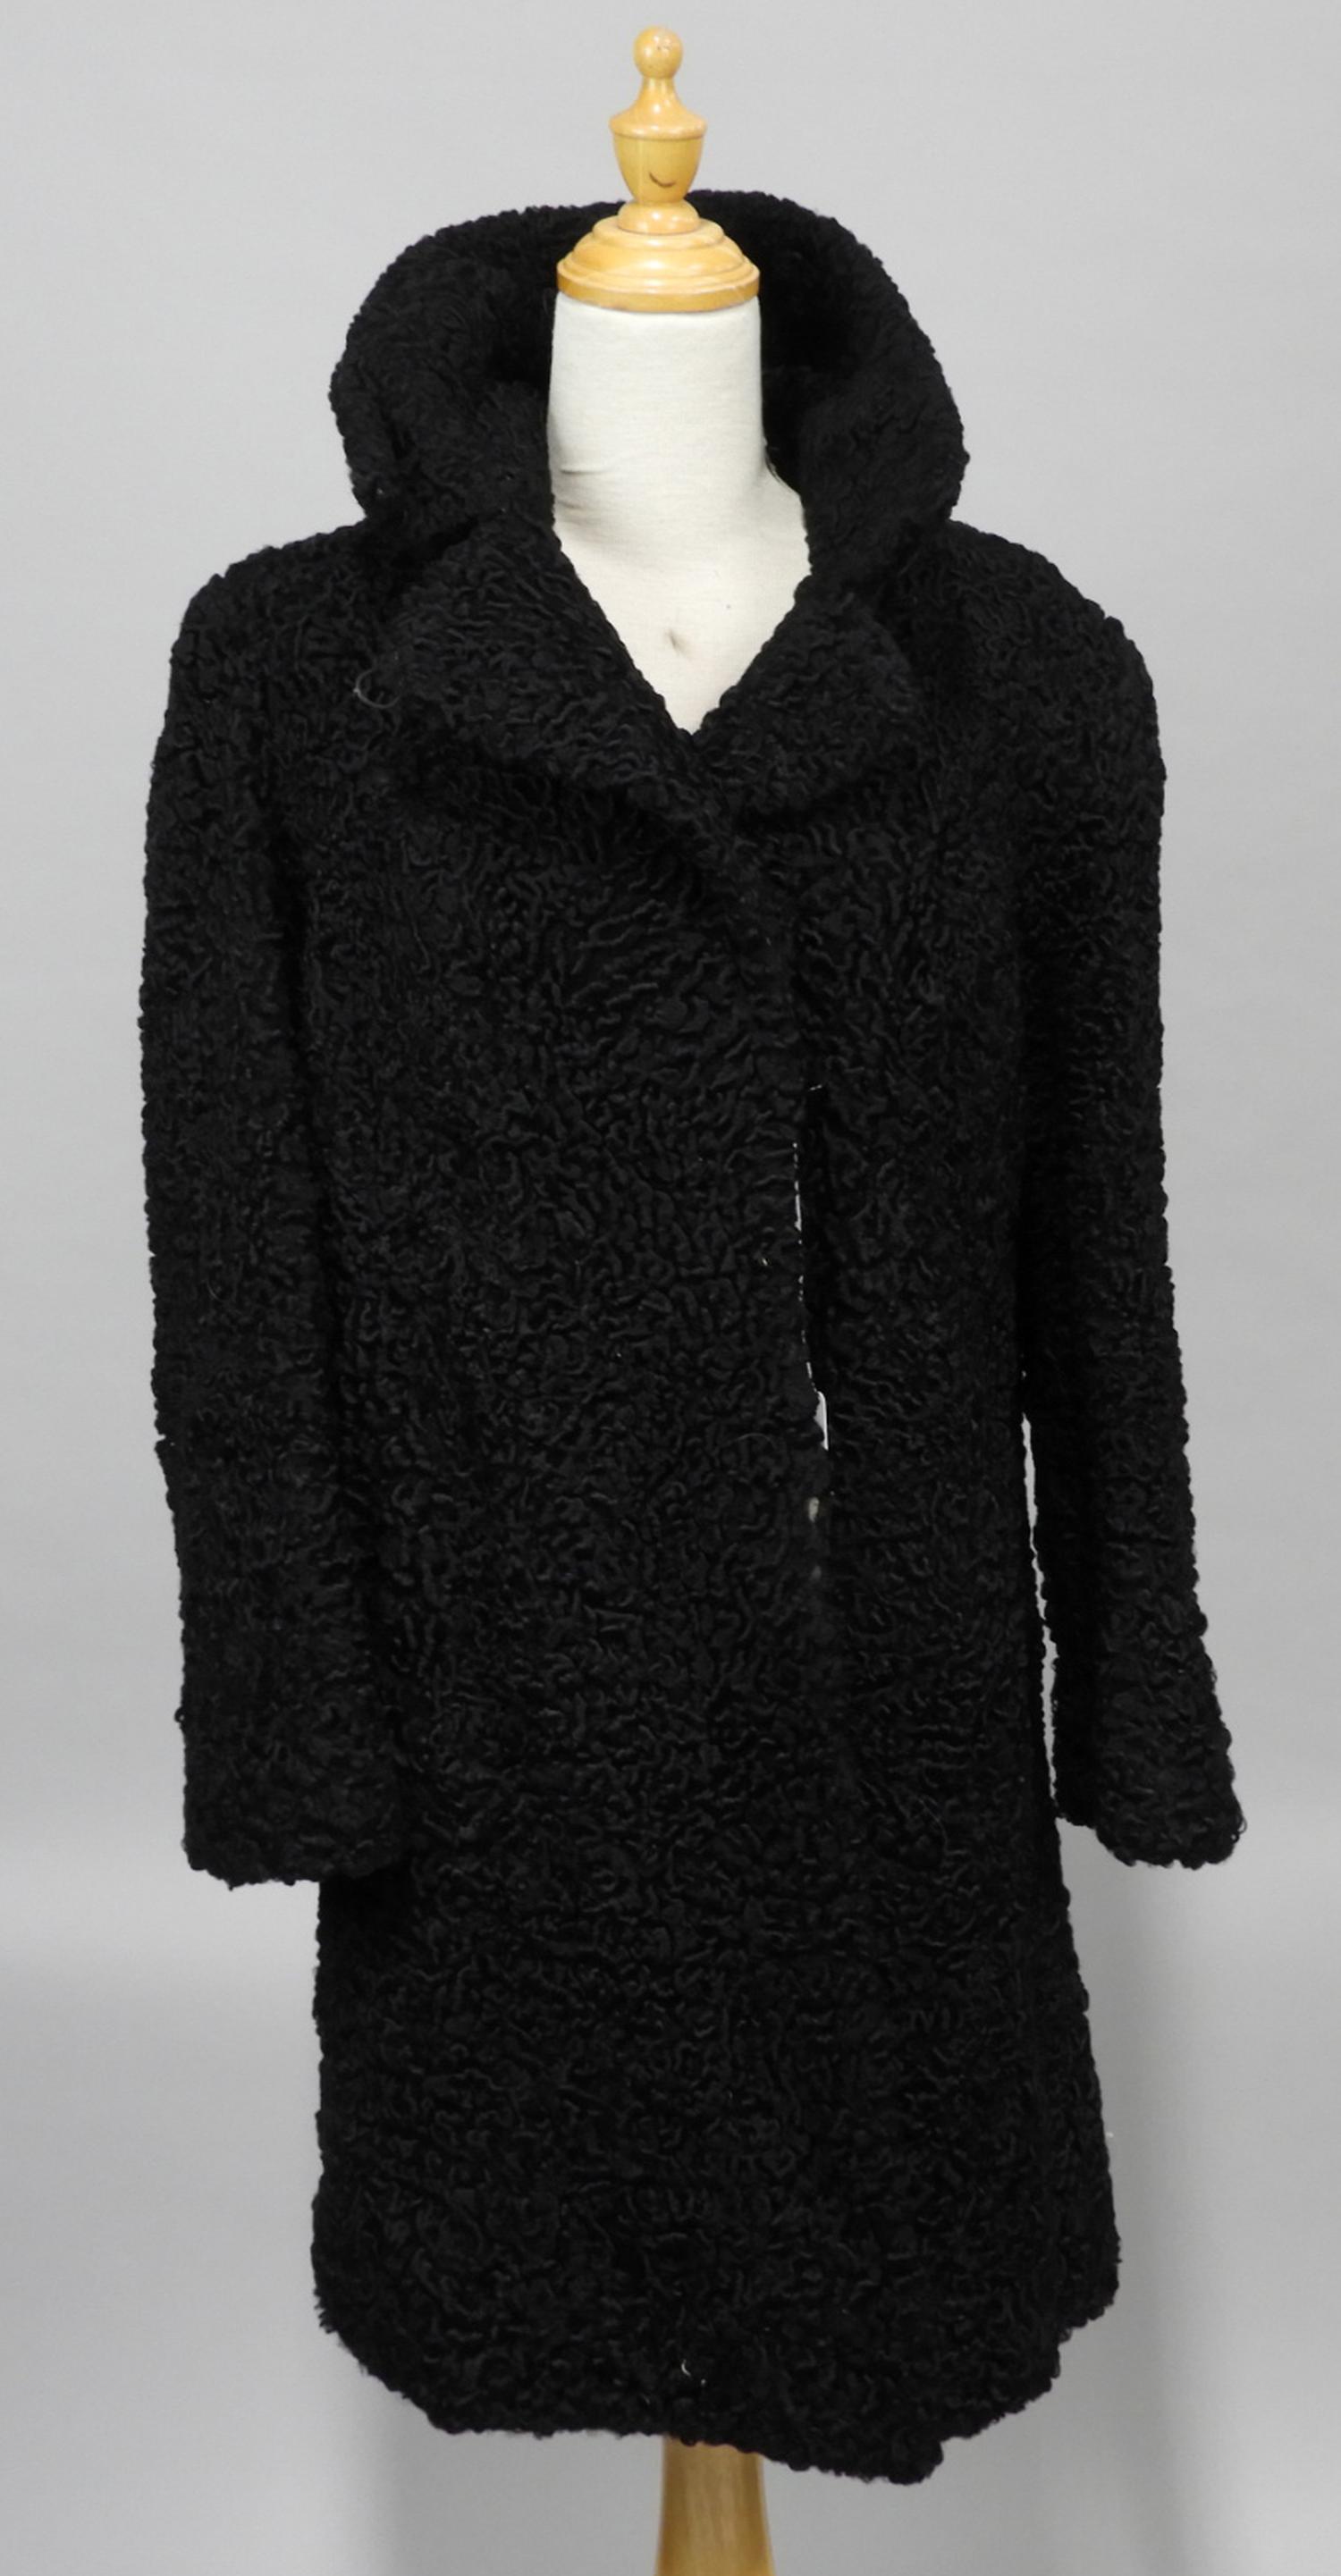 Murrays Auctioneers - Lot 32: Ladies vintage black lambswool coat